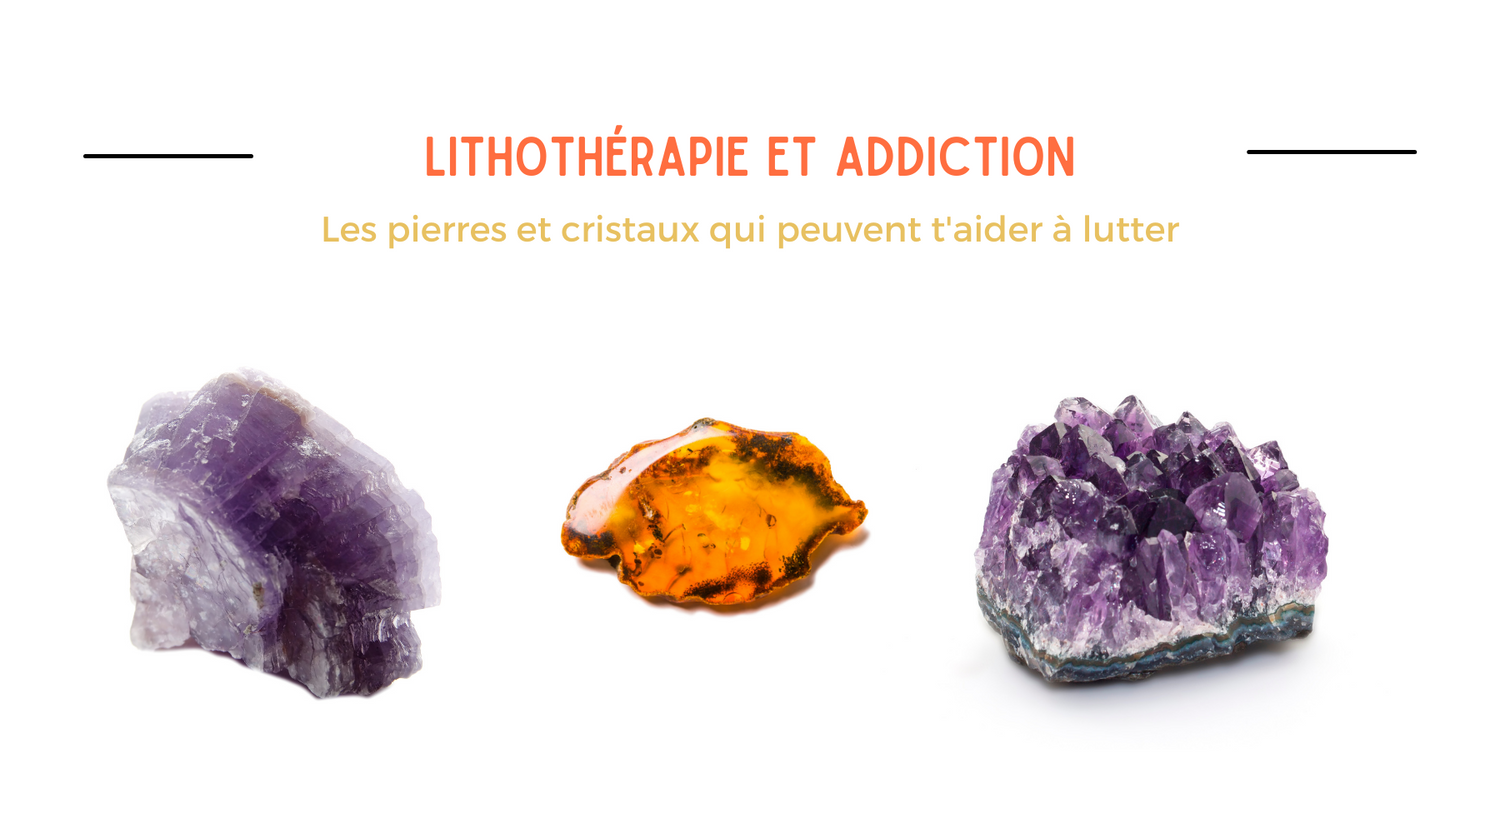 Lithothérapie les pierres et cristaux contre les addictions